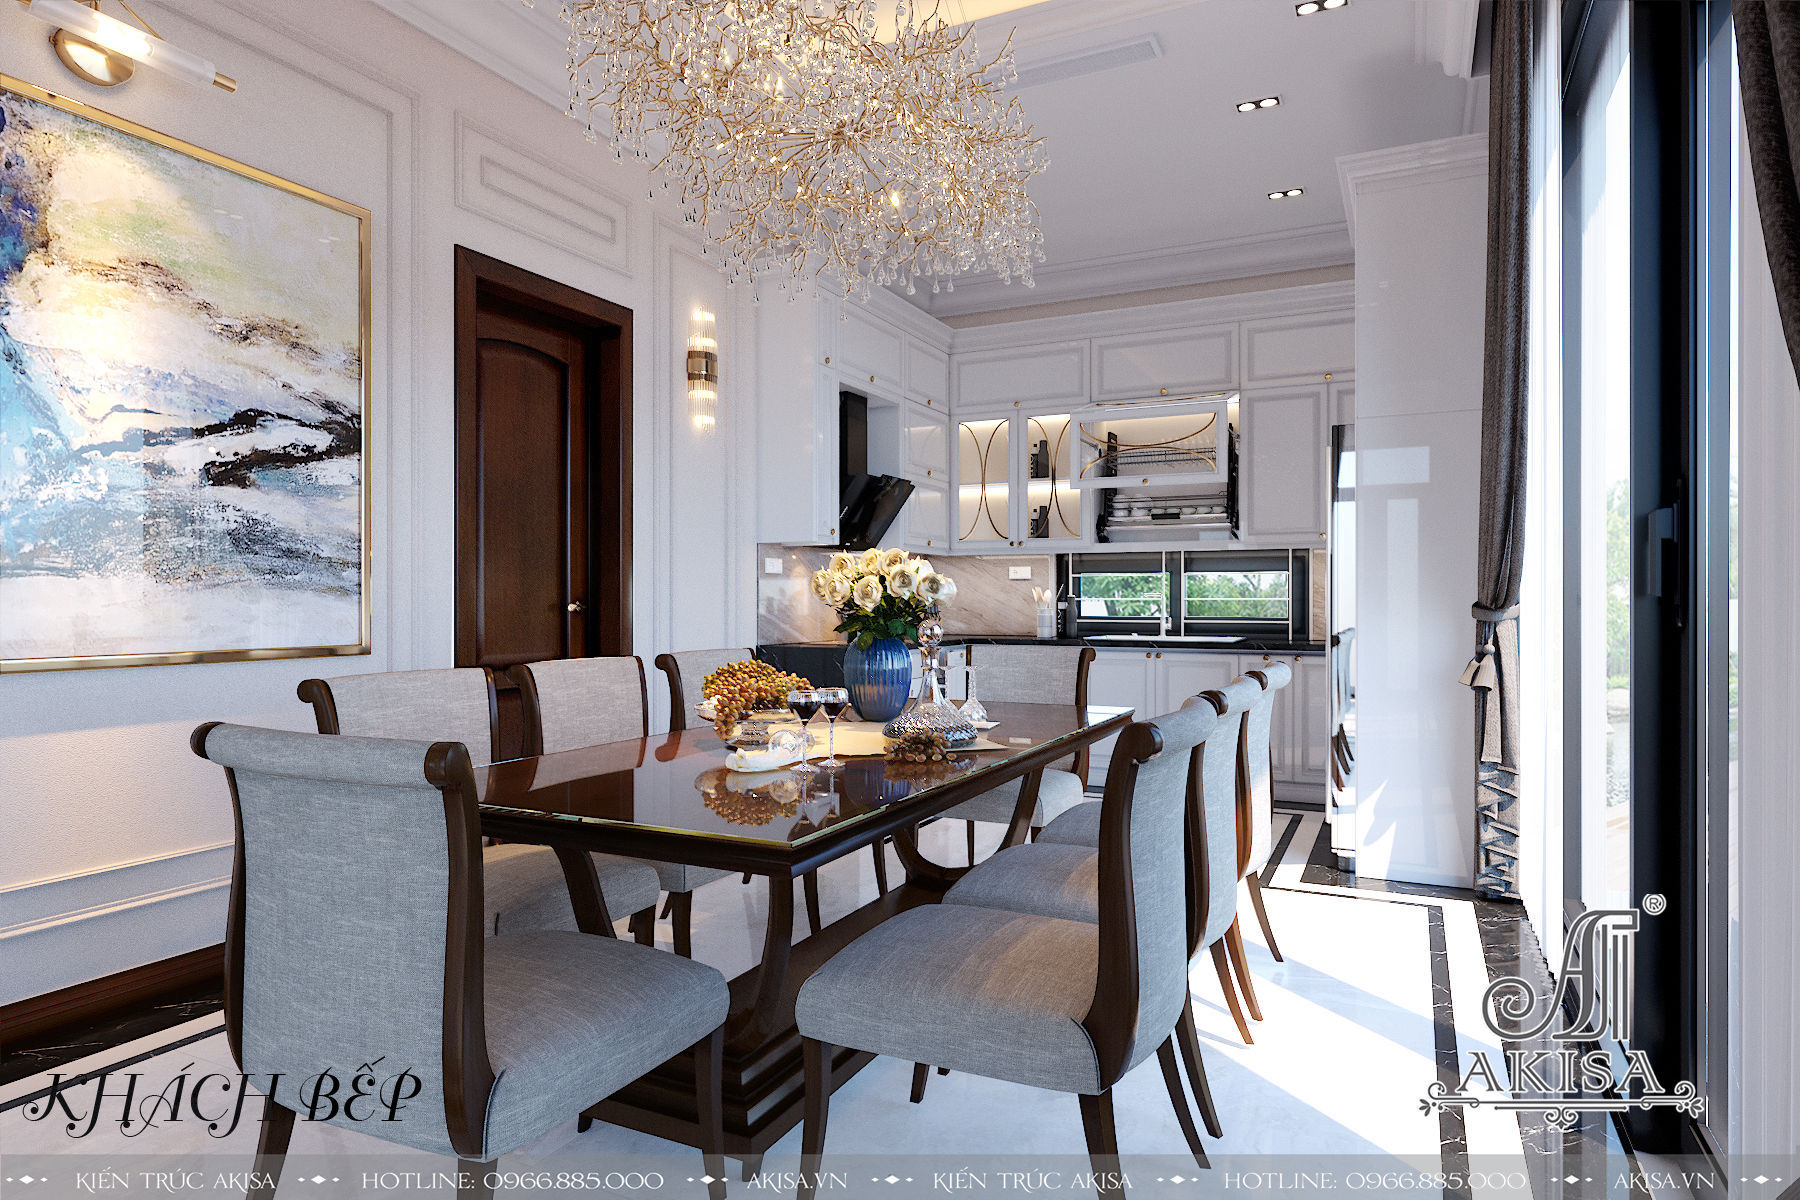 Phòng ăn mang tông màu trắng - xám nhẹ nhàng, thiết kế đơn giản hướng tới sự tiện nghi tối ưu.